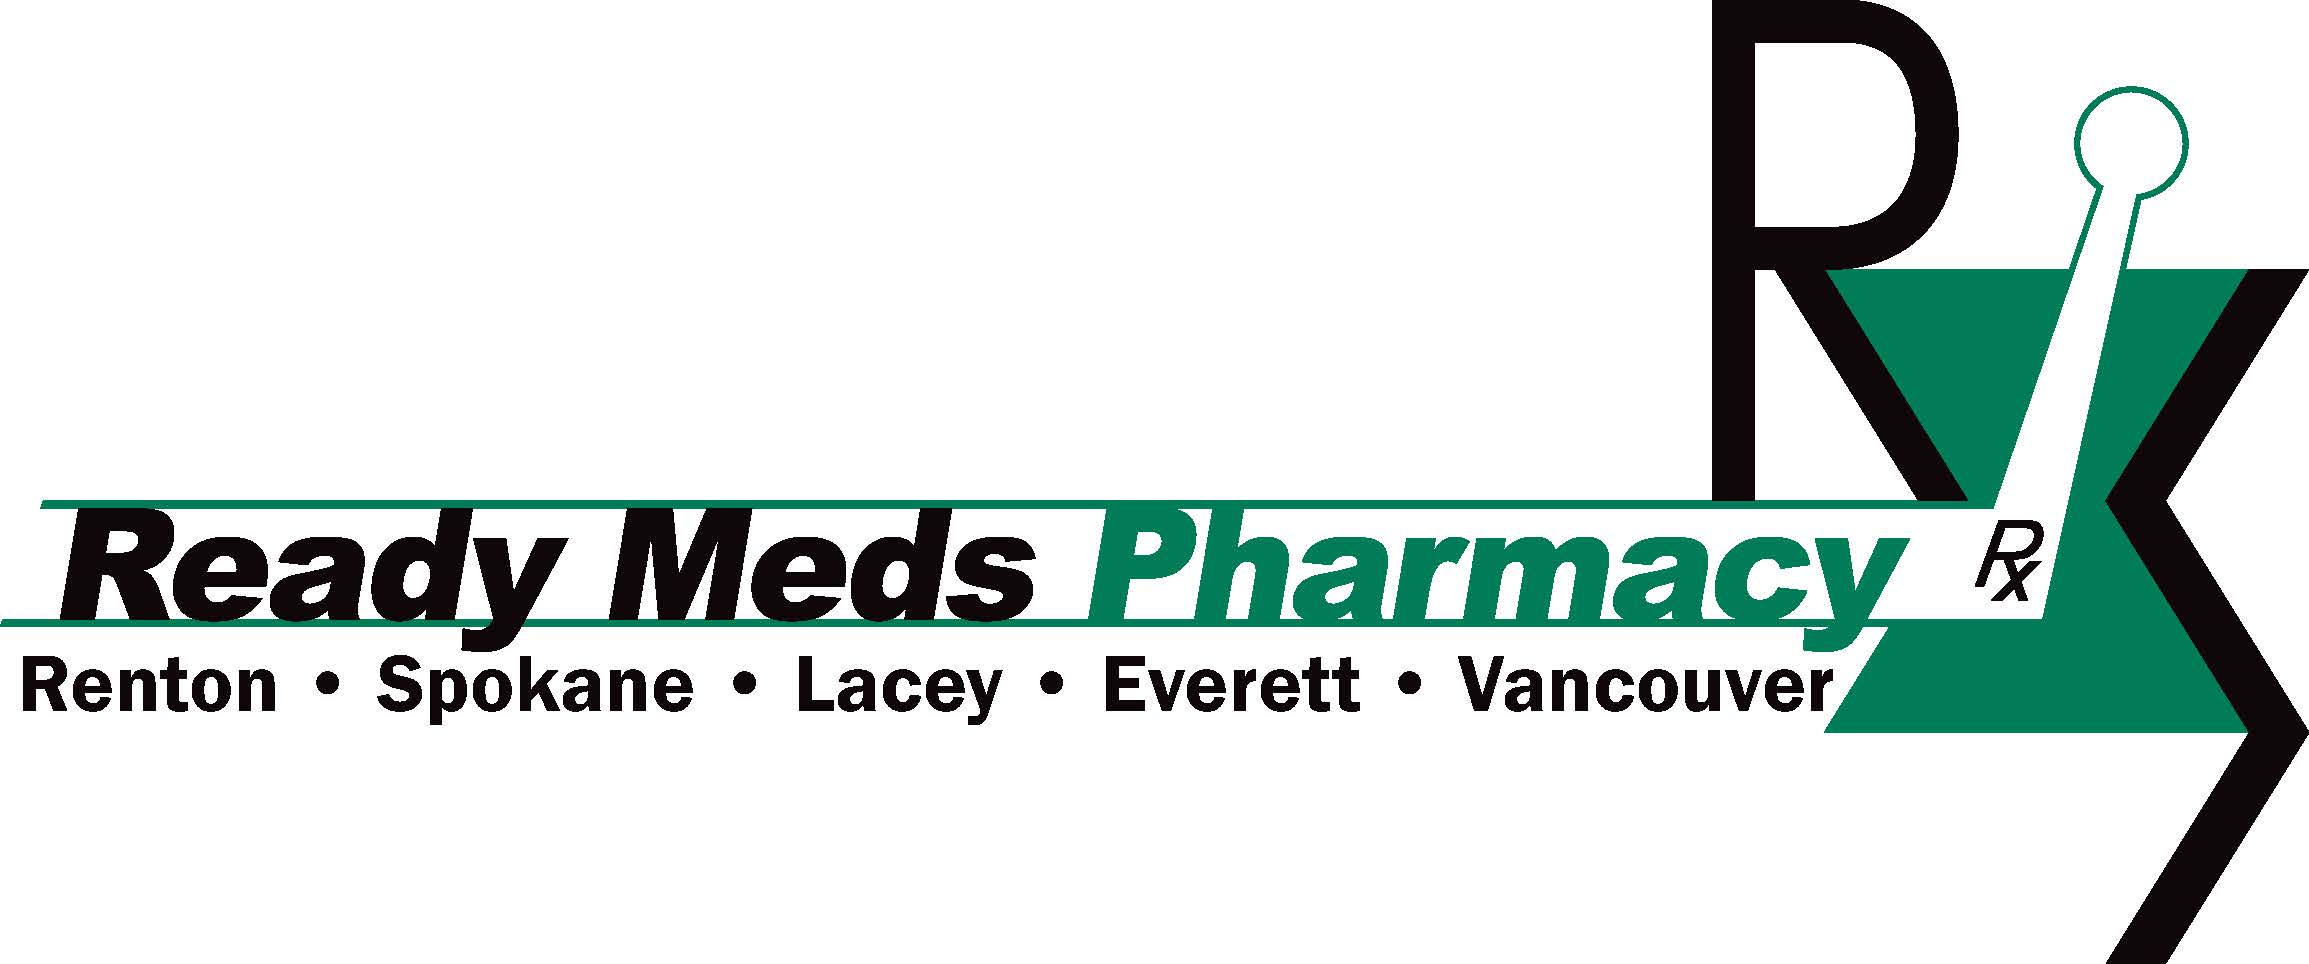 Ready Meds Pharmacy